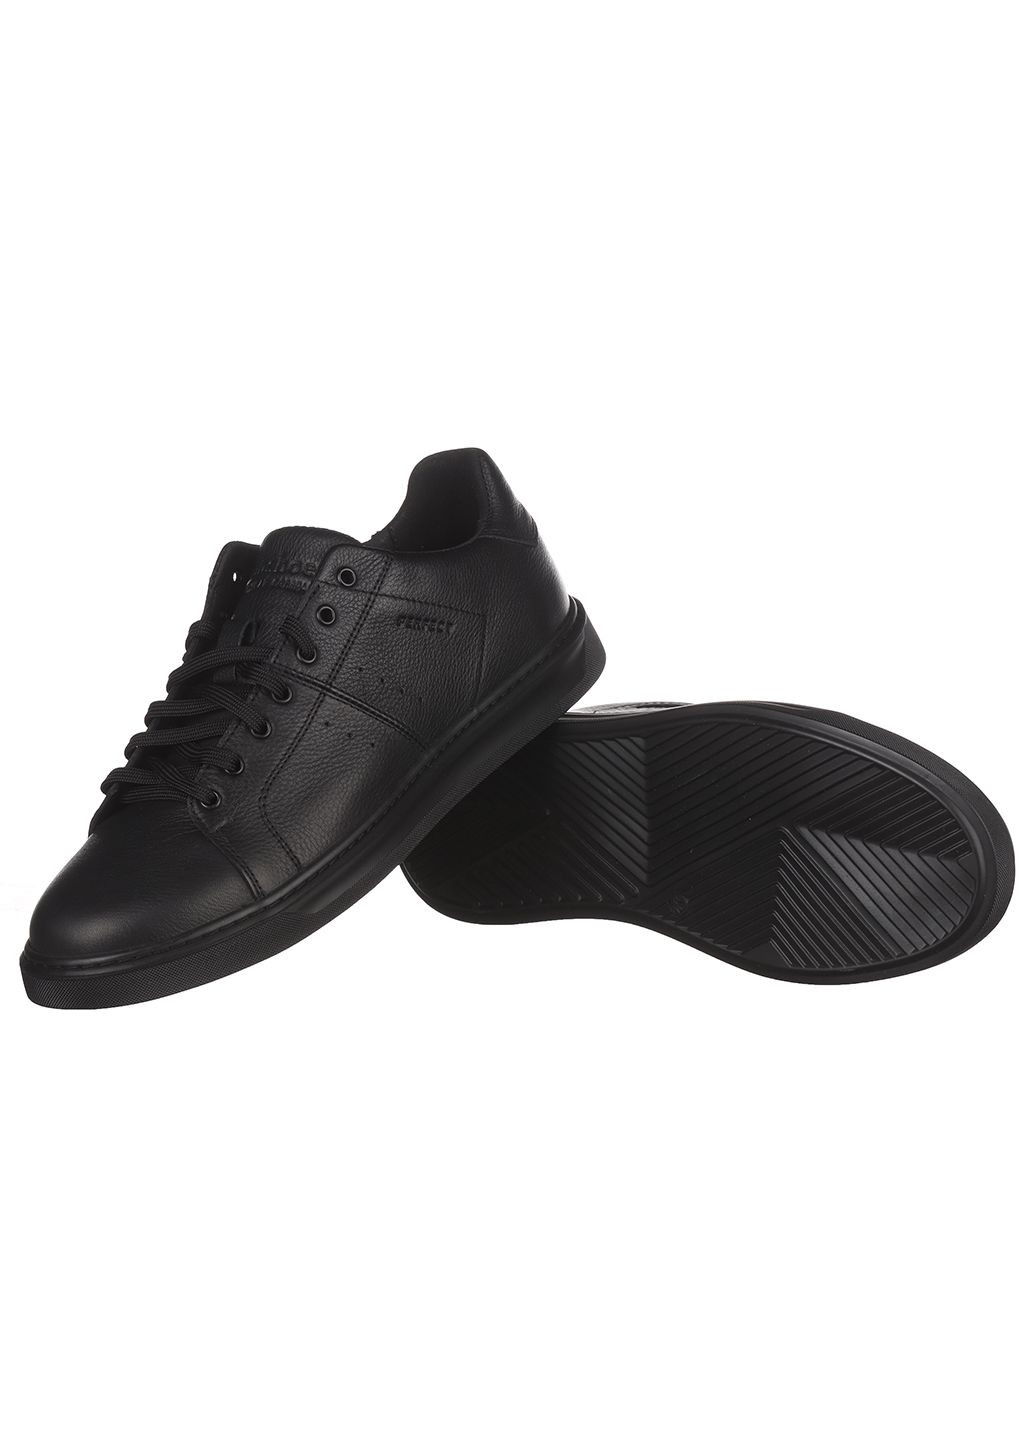 Черные демисезонные мужские кроссовки 203h Clubshoes